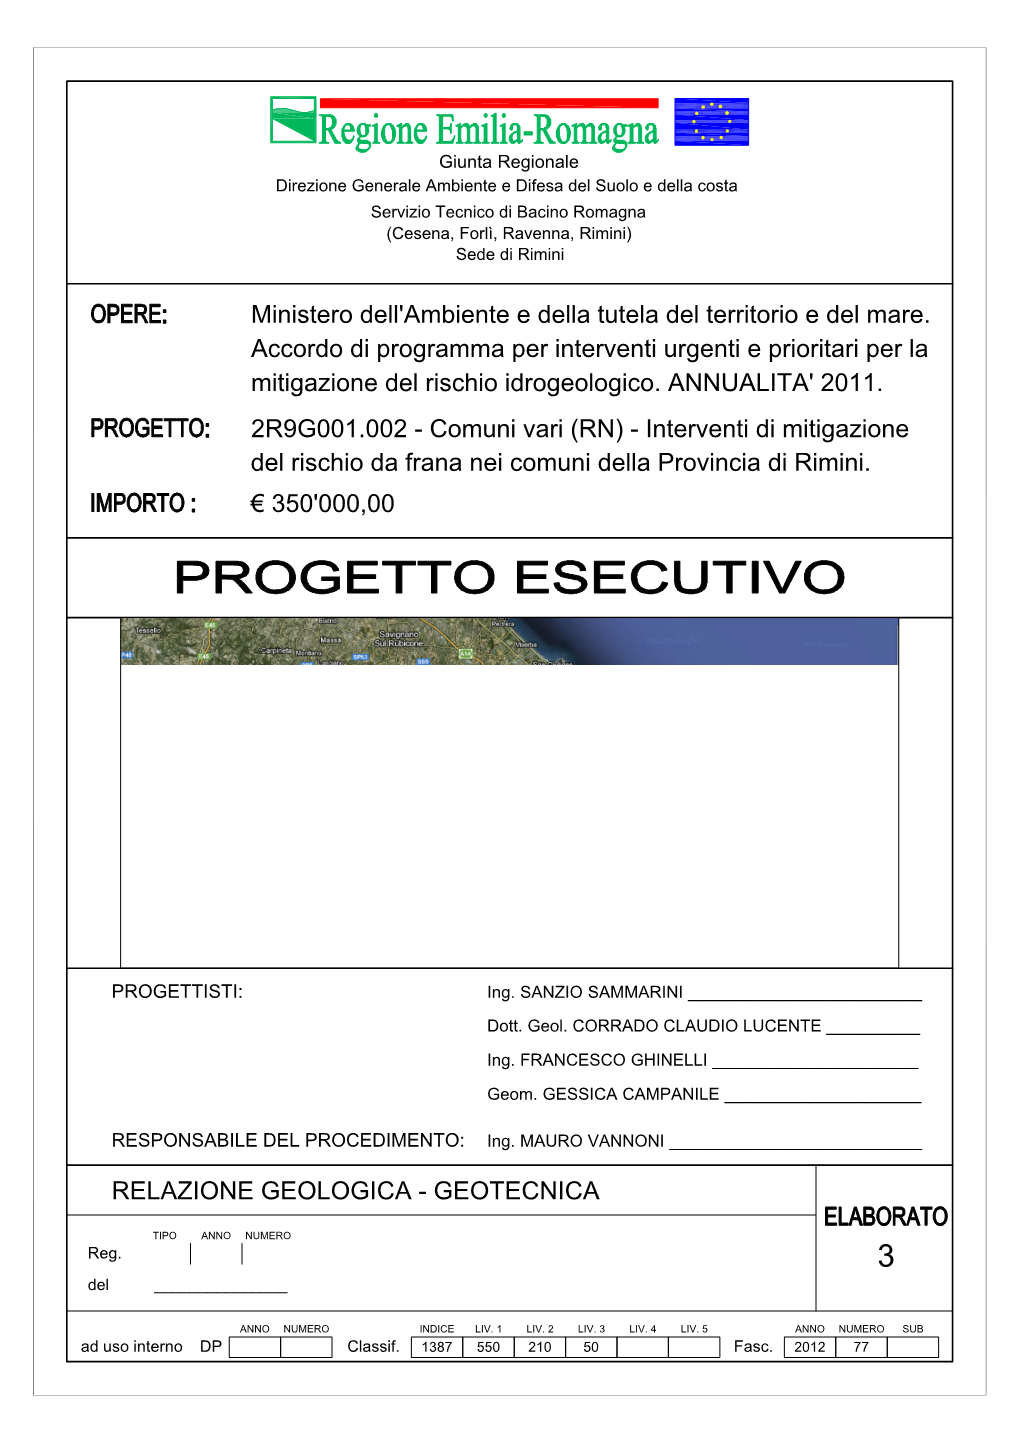 2R9G001.002 - Comuni Vari (RN) - Interventi Di Mitigazione Del Rischio Da Frana Nei Comuni Della Provincia Di Rimini